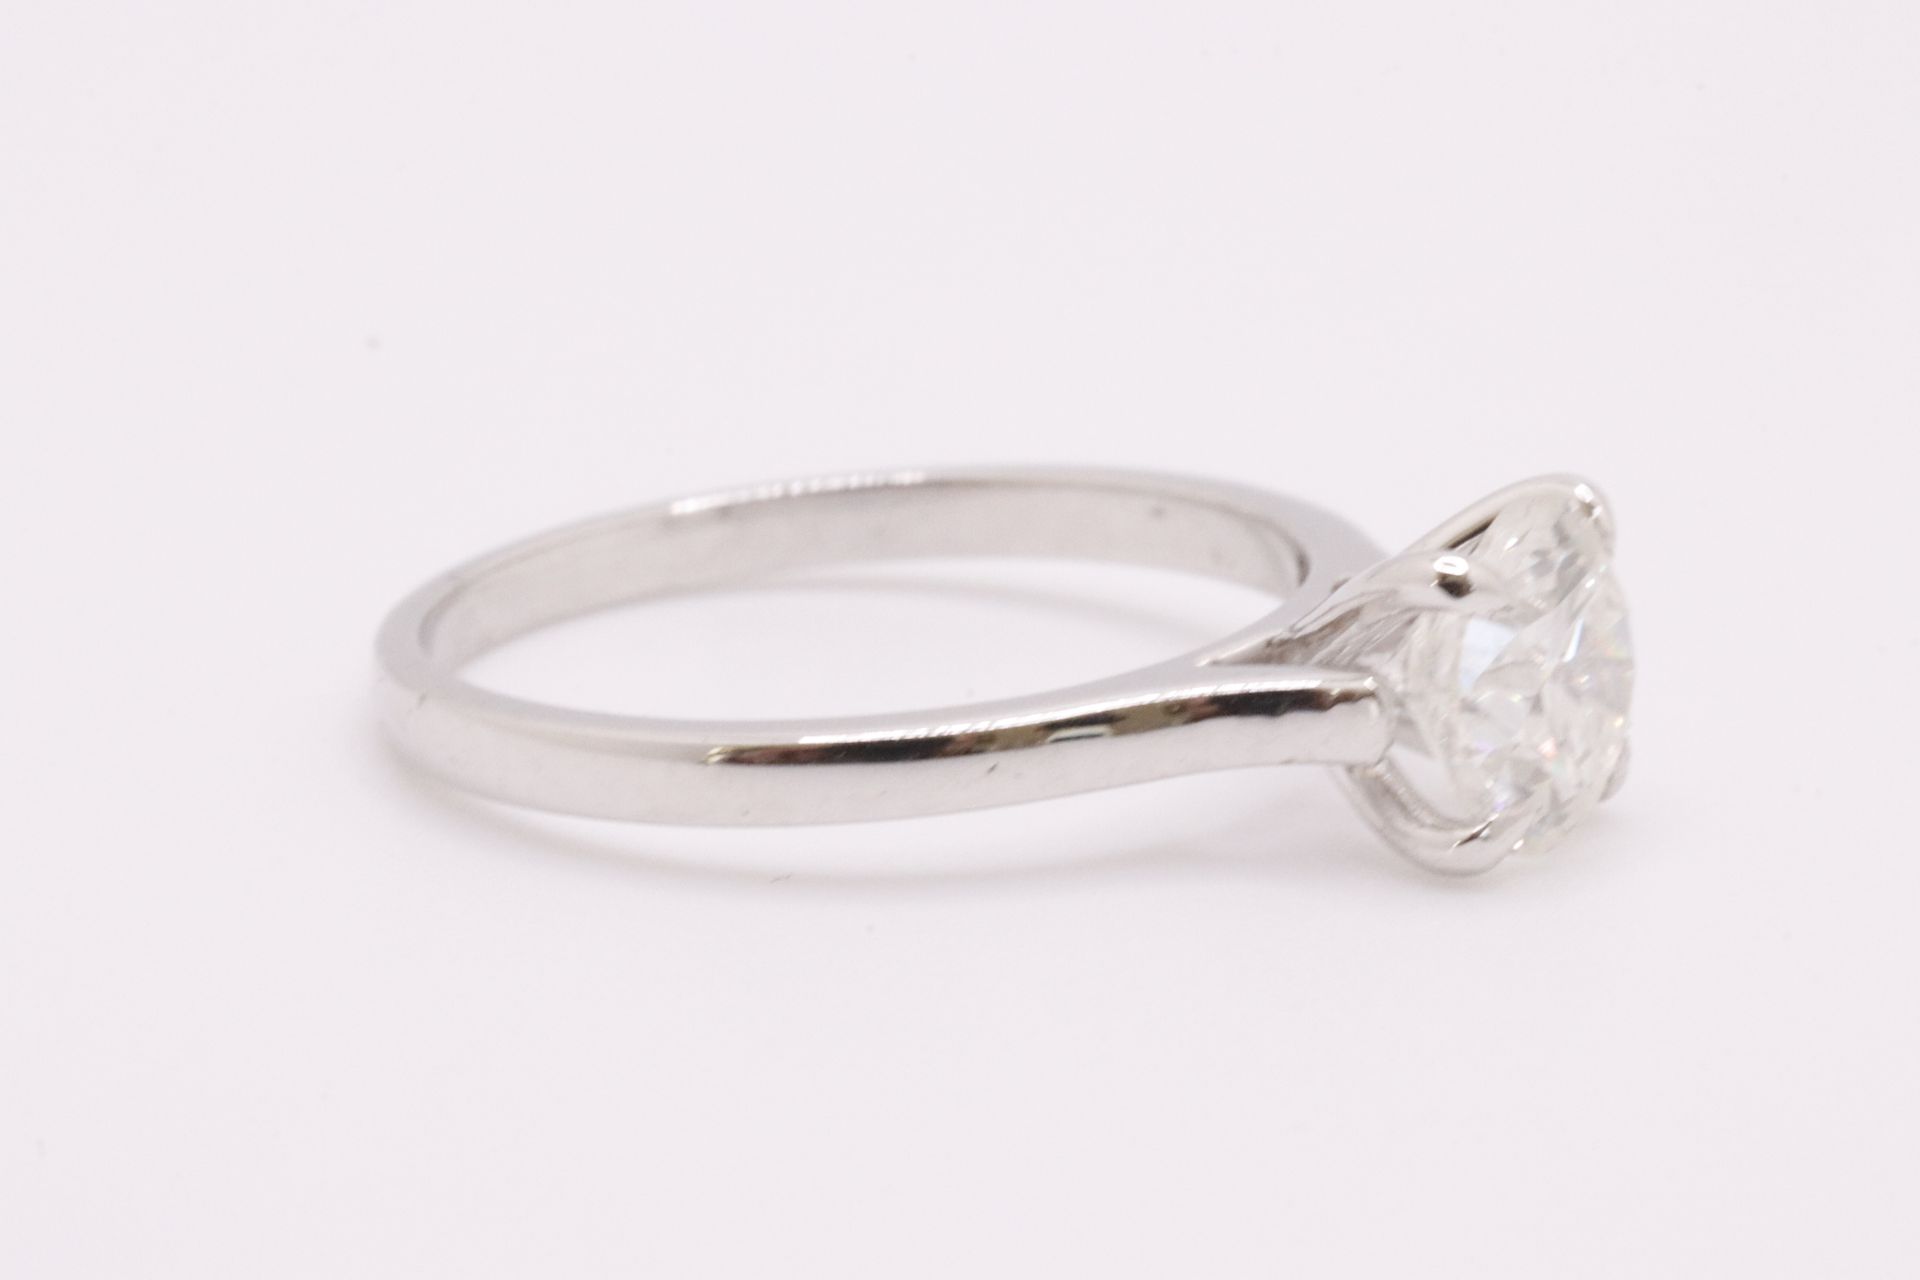 Round Brilliant Cut Natural Diamond Ring 1.09 Carat I Colour SI2 Clarity EX EX EX - GIA - Image 4 of 9